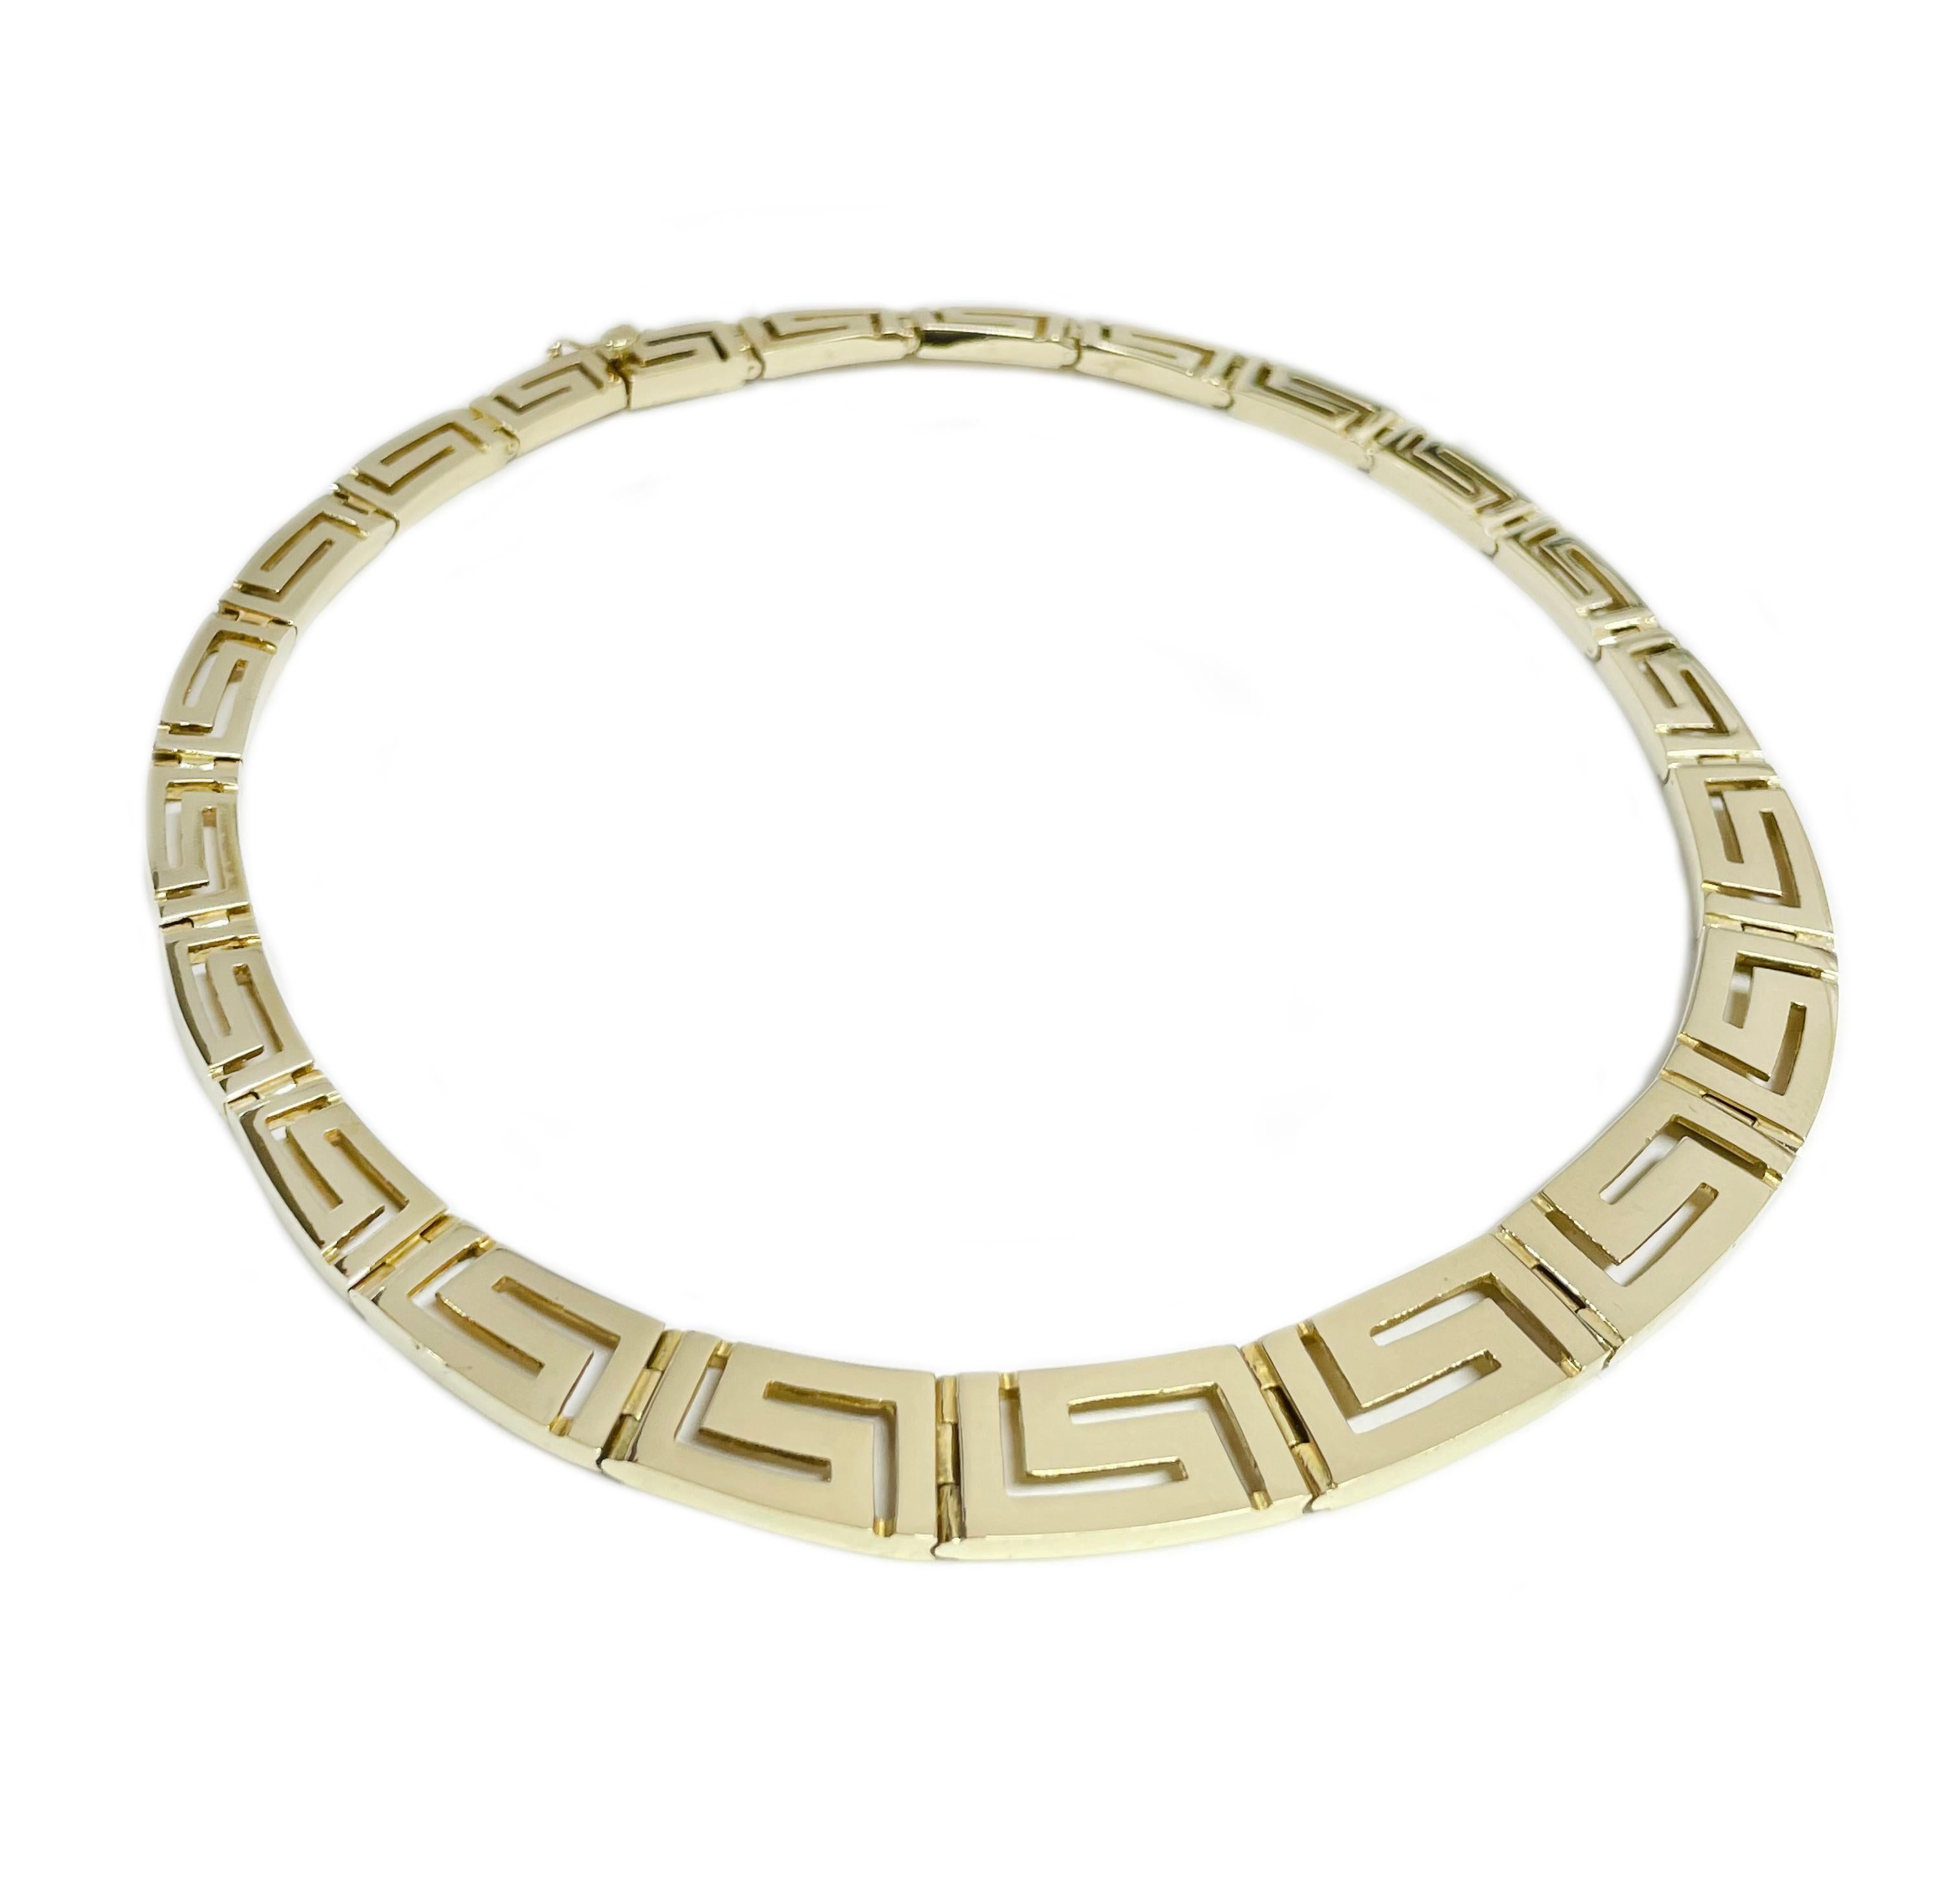 14 Karat Gold Griechischer Schlüssel Eternity Choker Halskette. Die Halskette besteht aus abgestuften rechteckigen goldenen griechischen Schlüsselgliedern. Die Glieder reichen von 12 mm x 20 mm bis 7 mm x 14 mm. Die Halskette hat einen